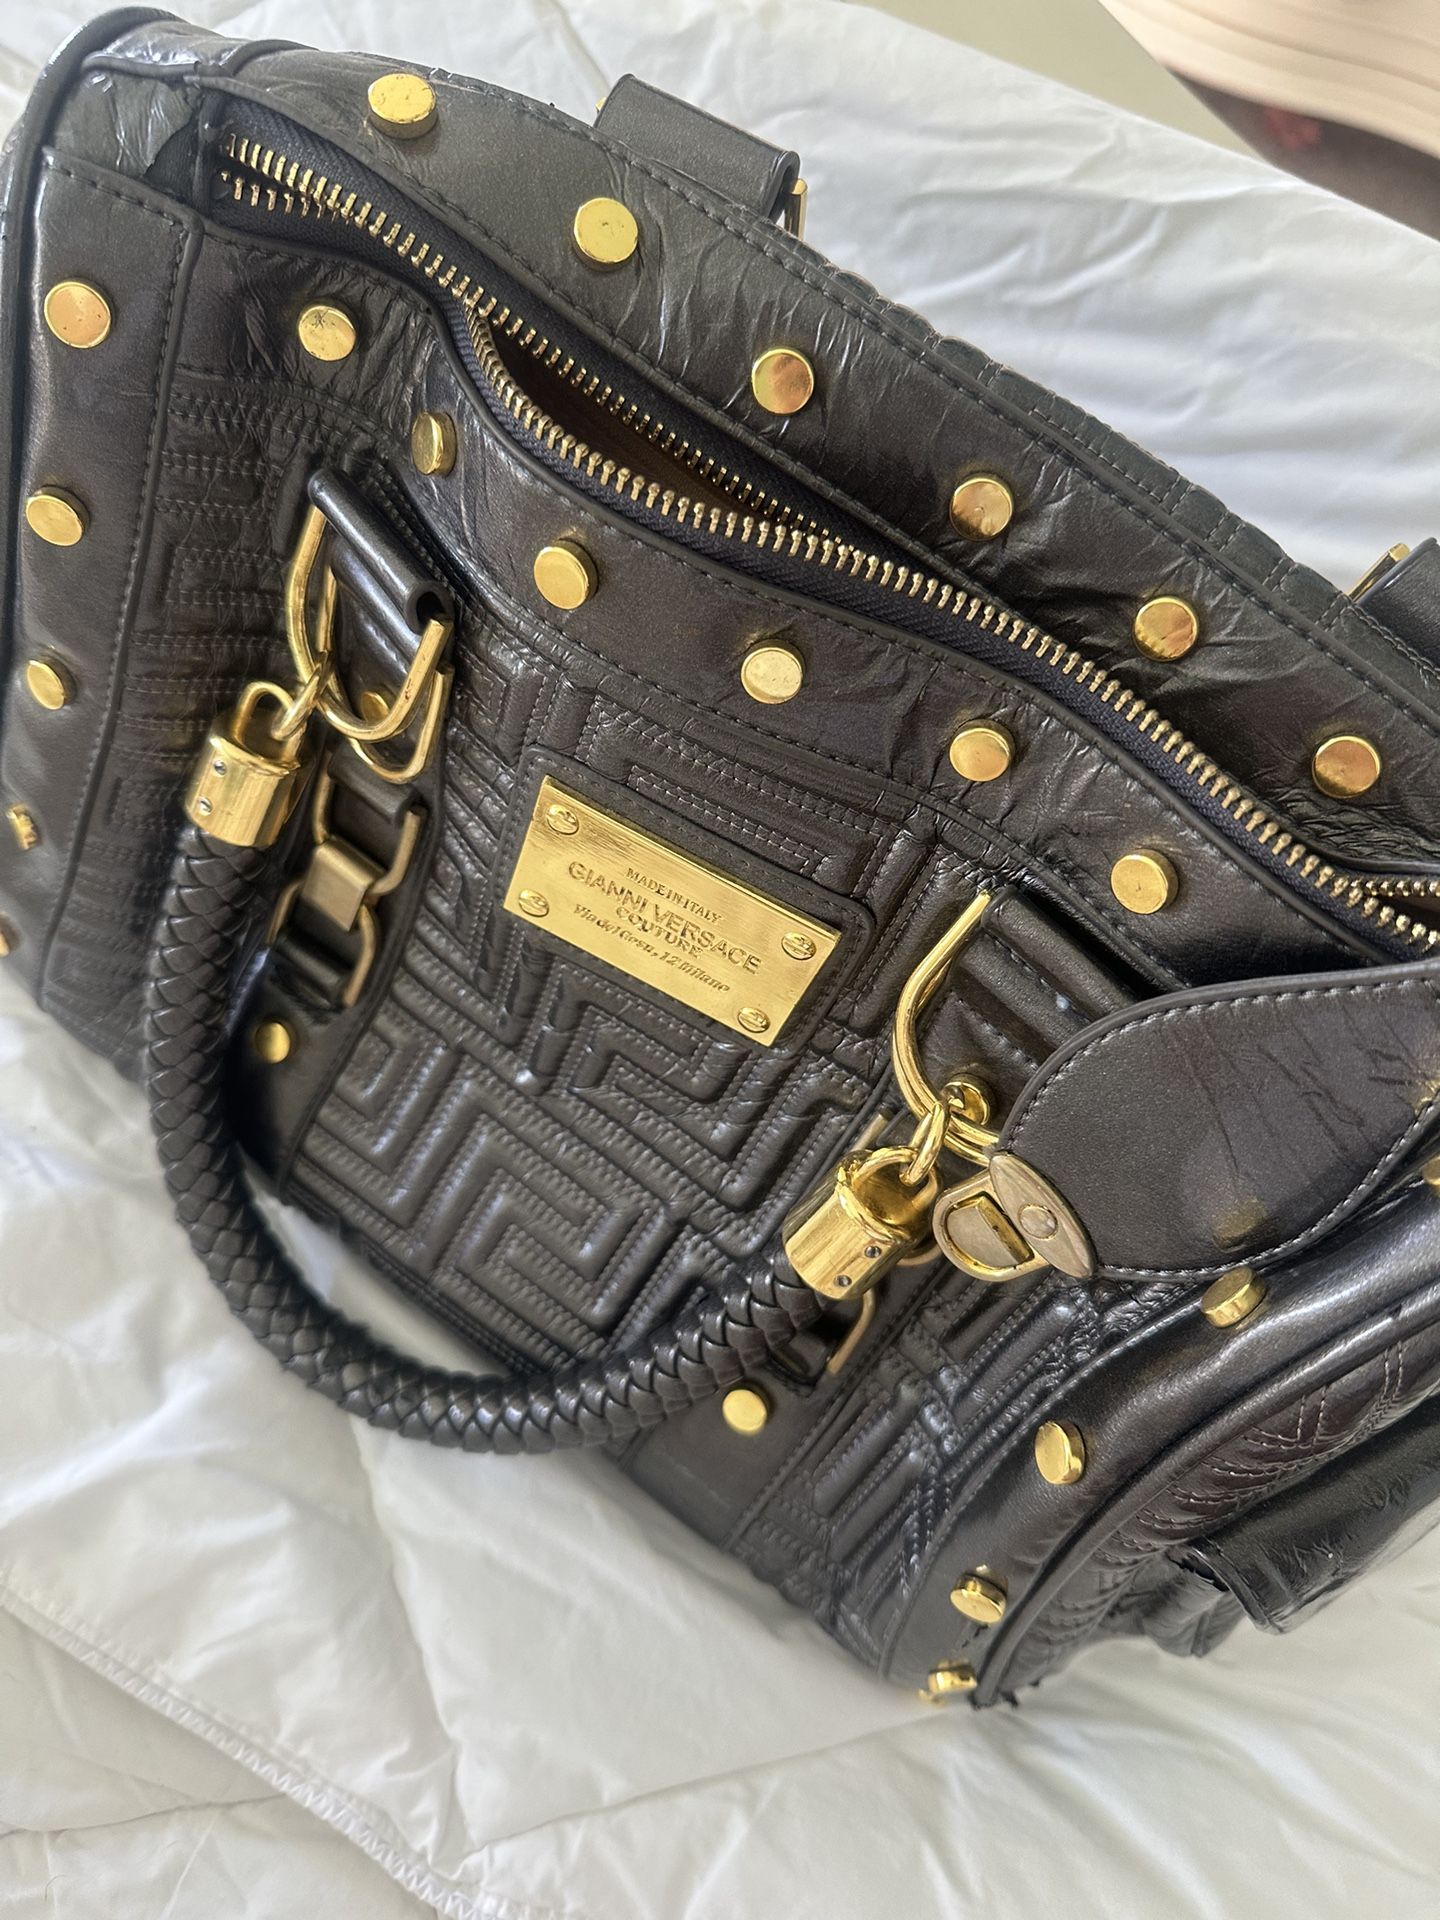 Gianni Versace Bag